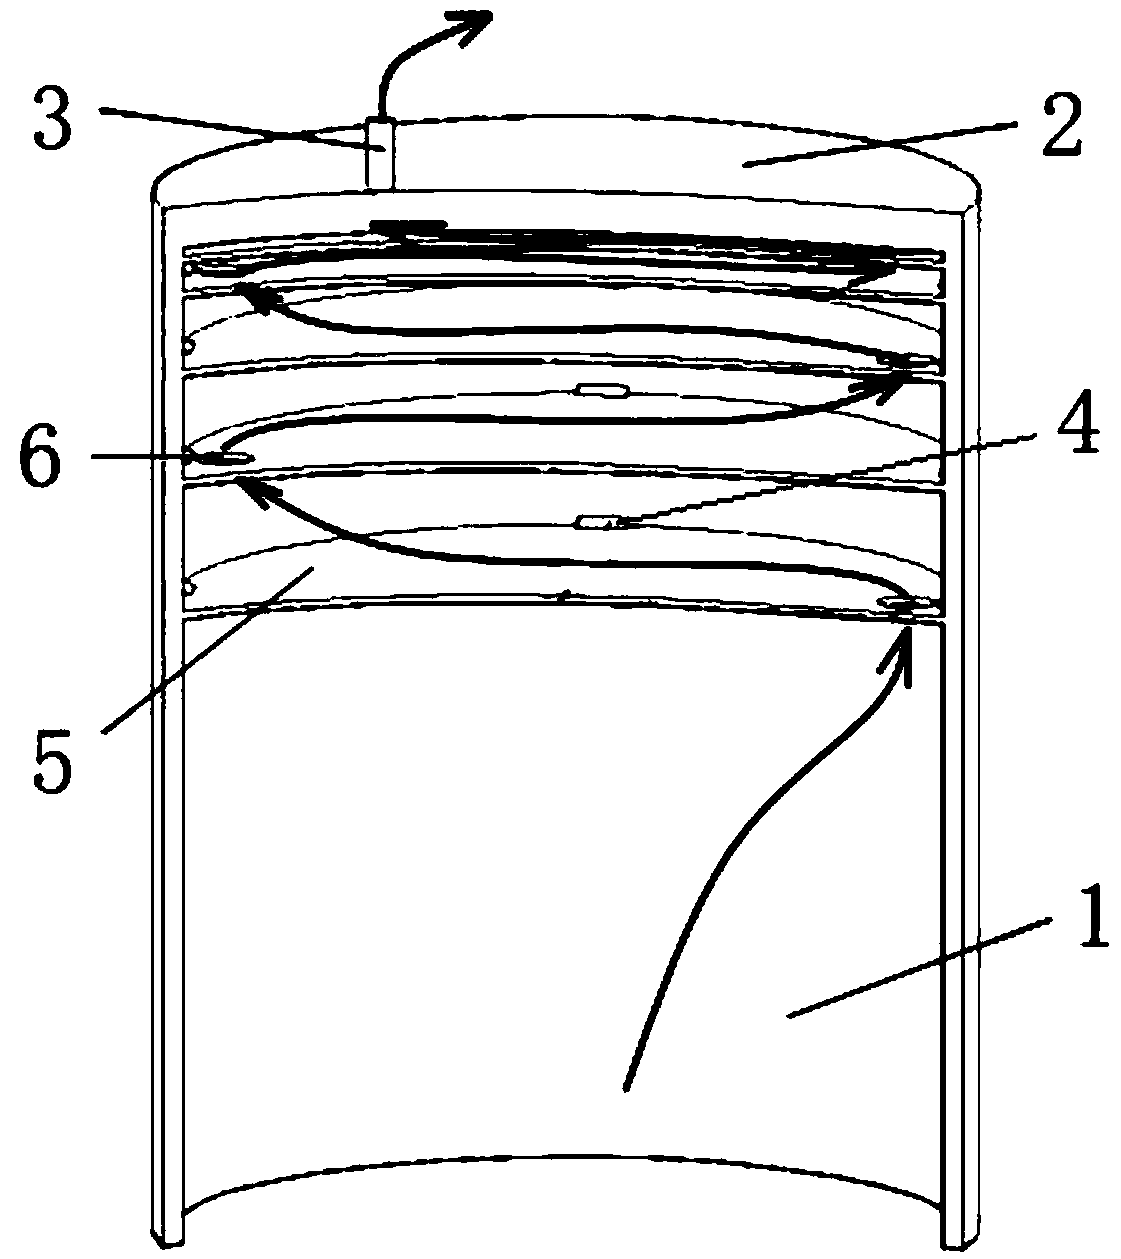 Barrel-shaped foundation capable of weakening soil plug phenomenon